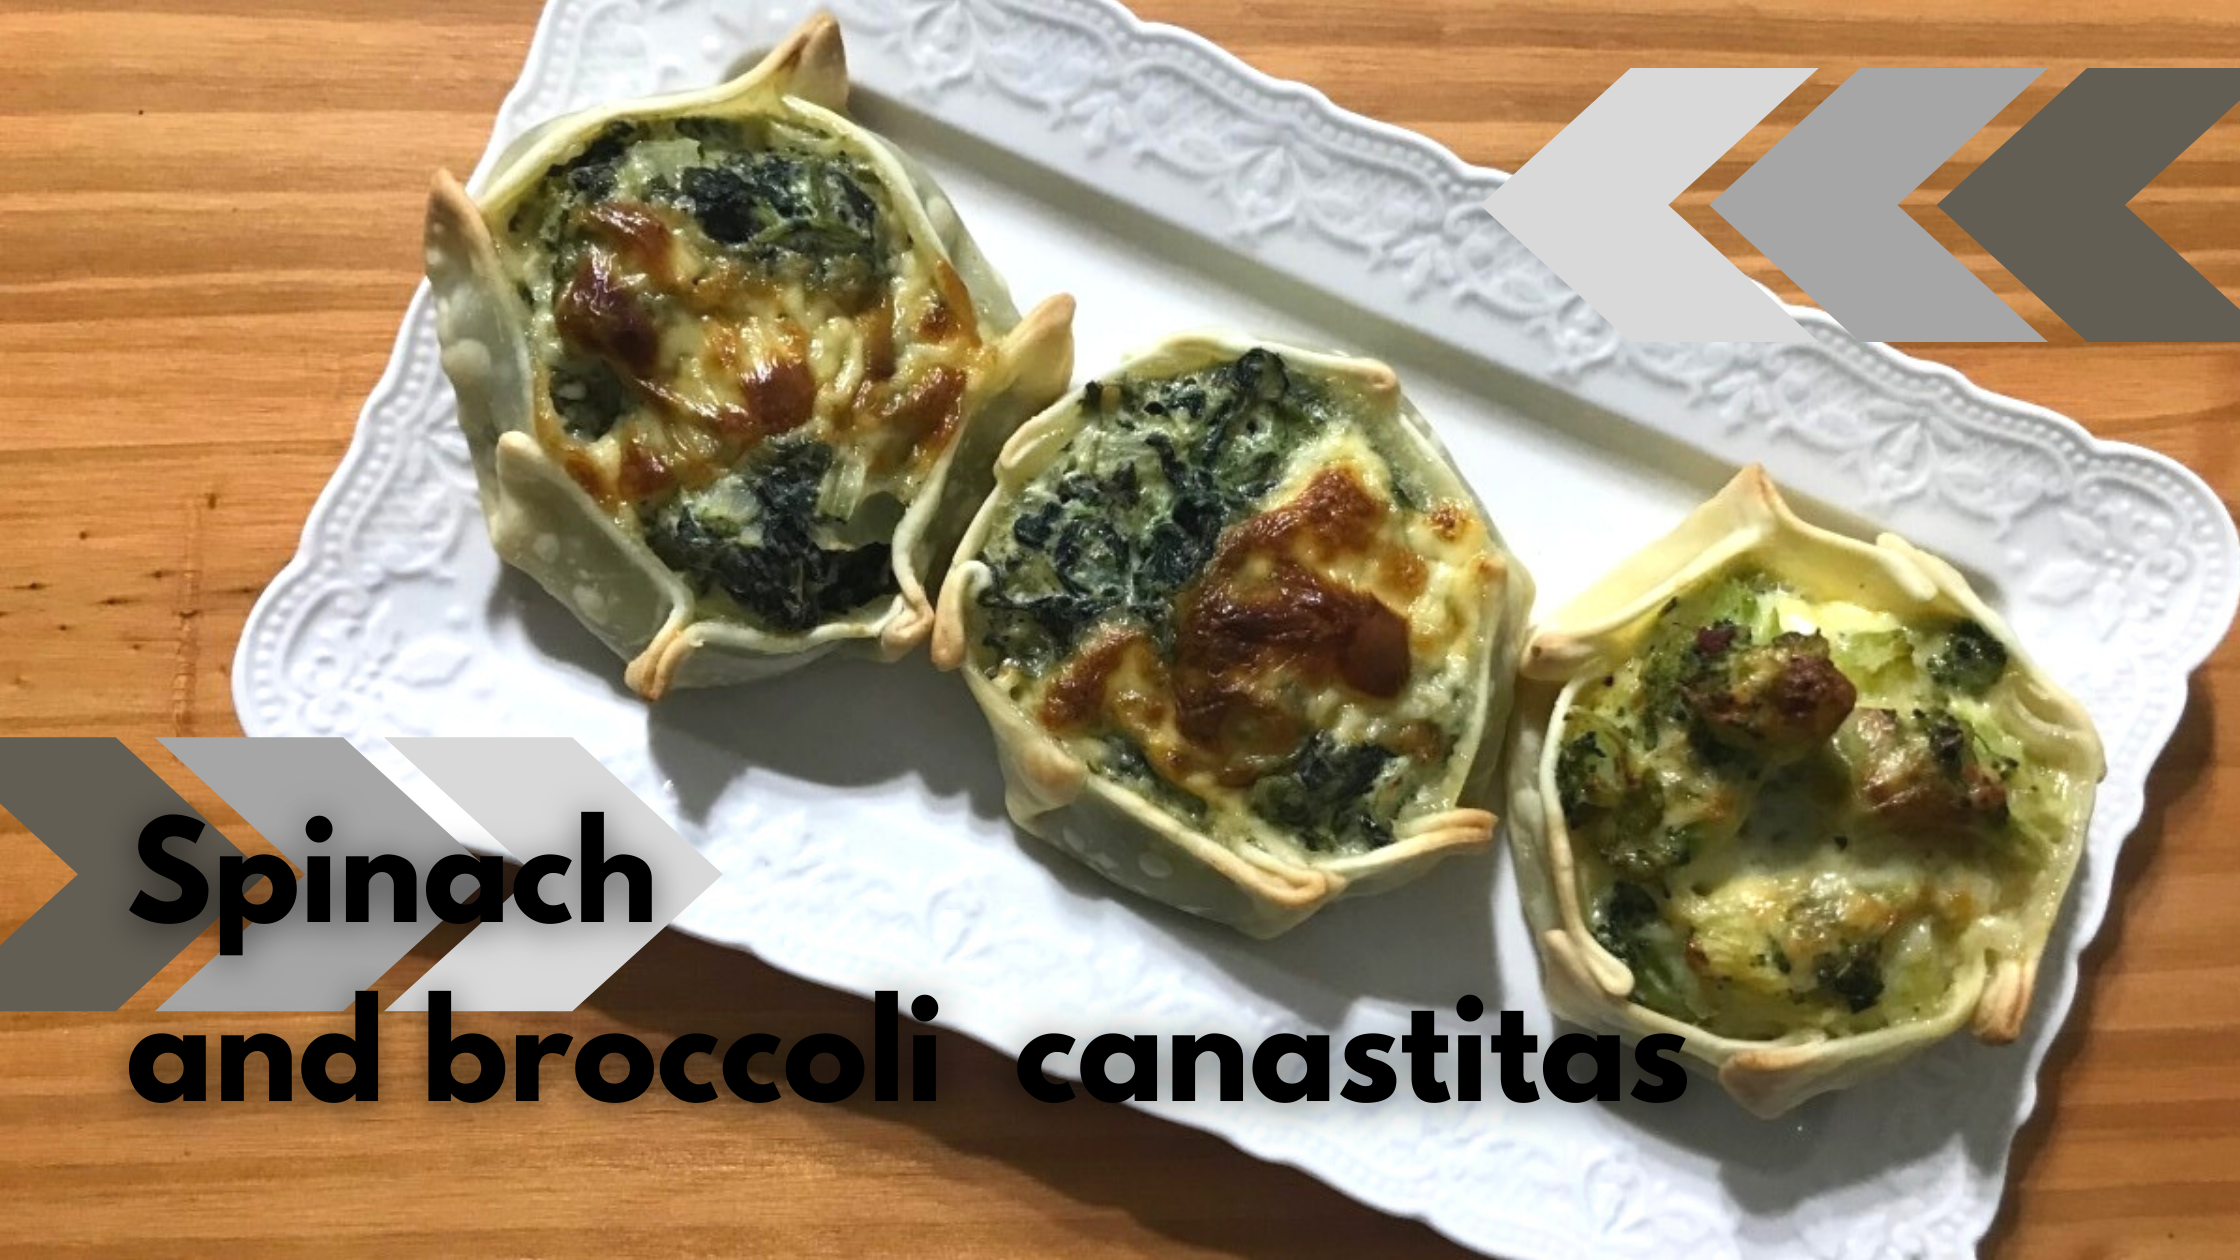 Canastitas de espinaca y brocoli (1).png